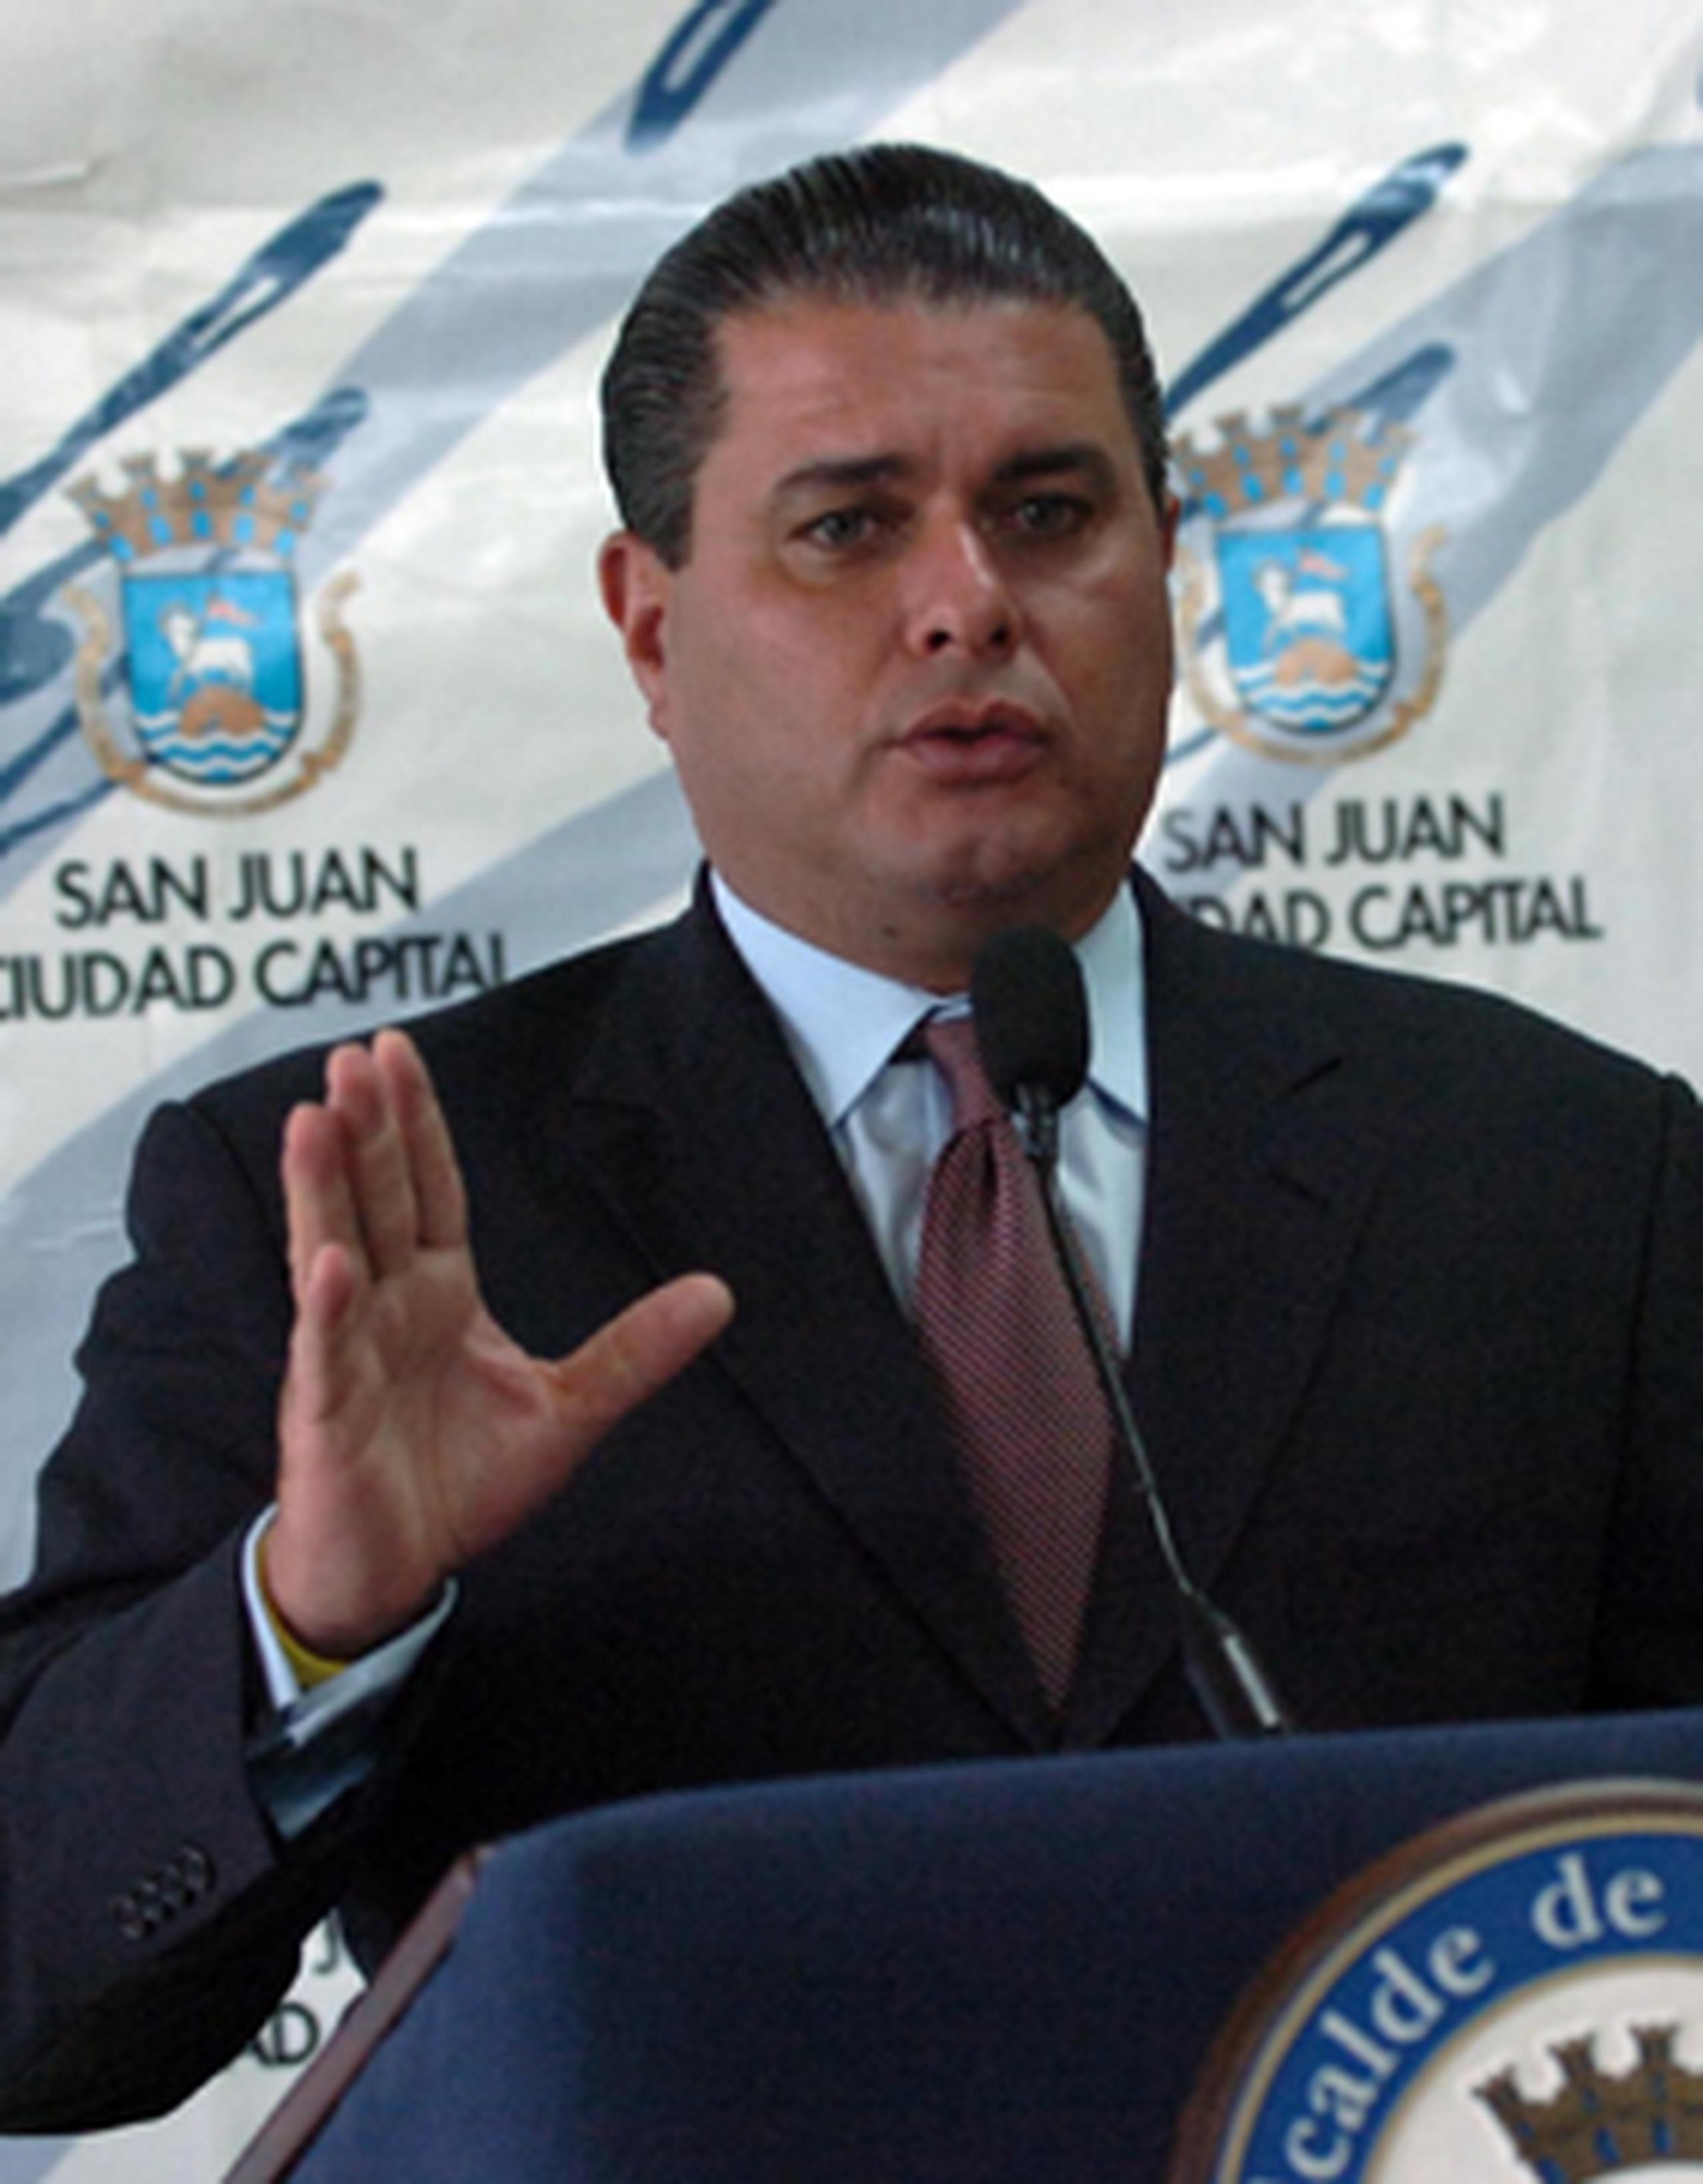 Según la encuesta de El Nuevo Día, Santini volvería a la alcaldía de San Juan con un 45%, con lo que supera el 38% de la candidata del Partido Popular Democrático, Carmen Yulín Cruz. (Archivo)